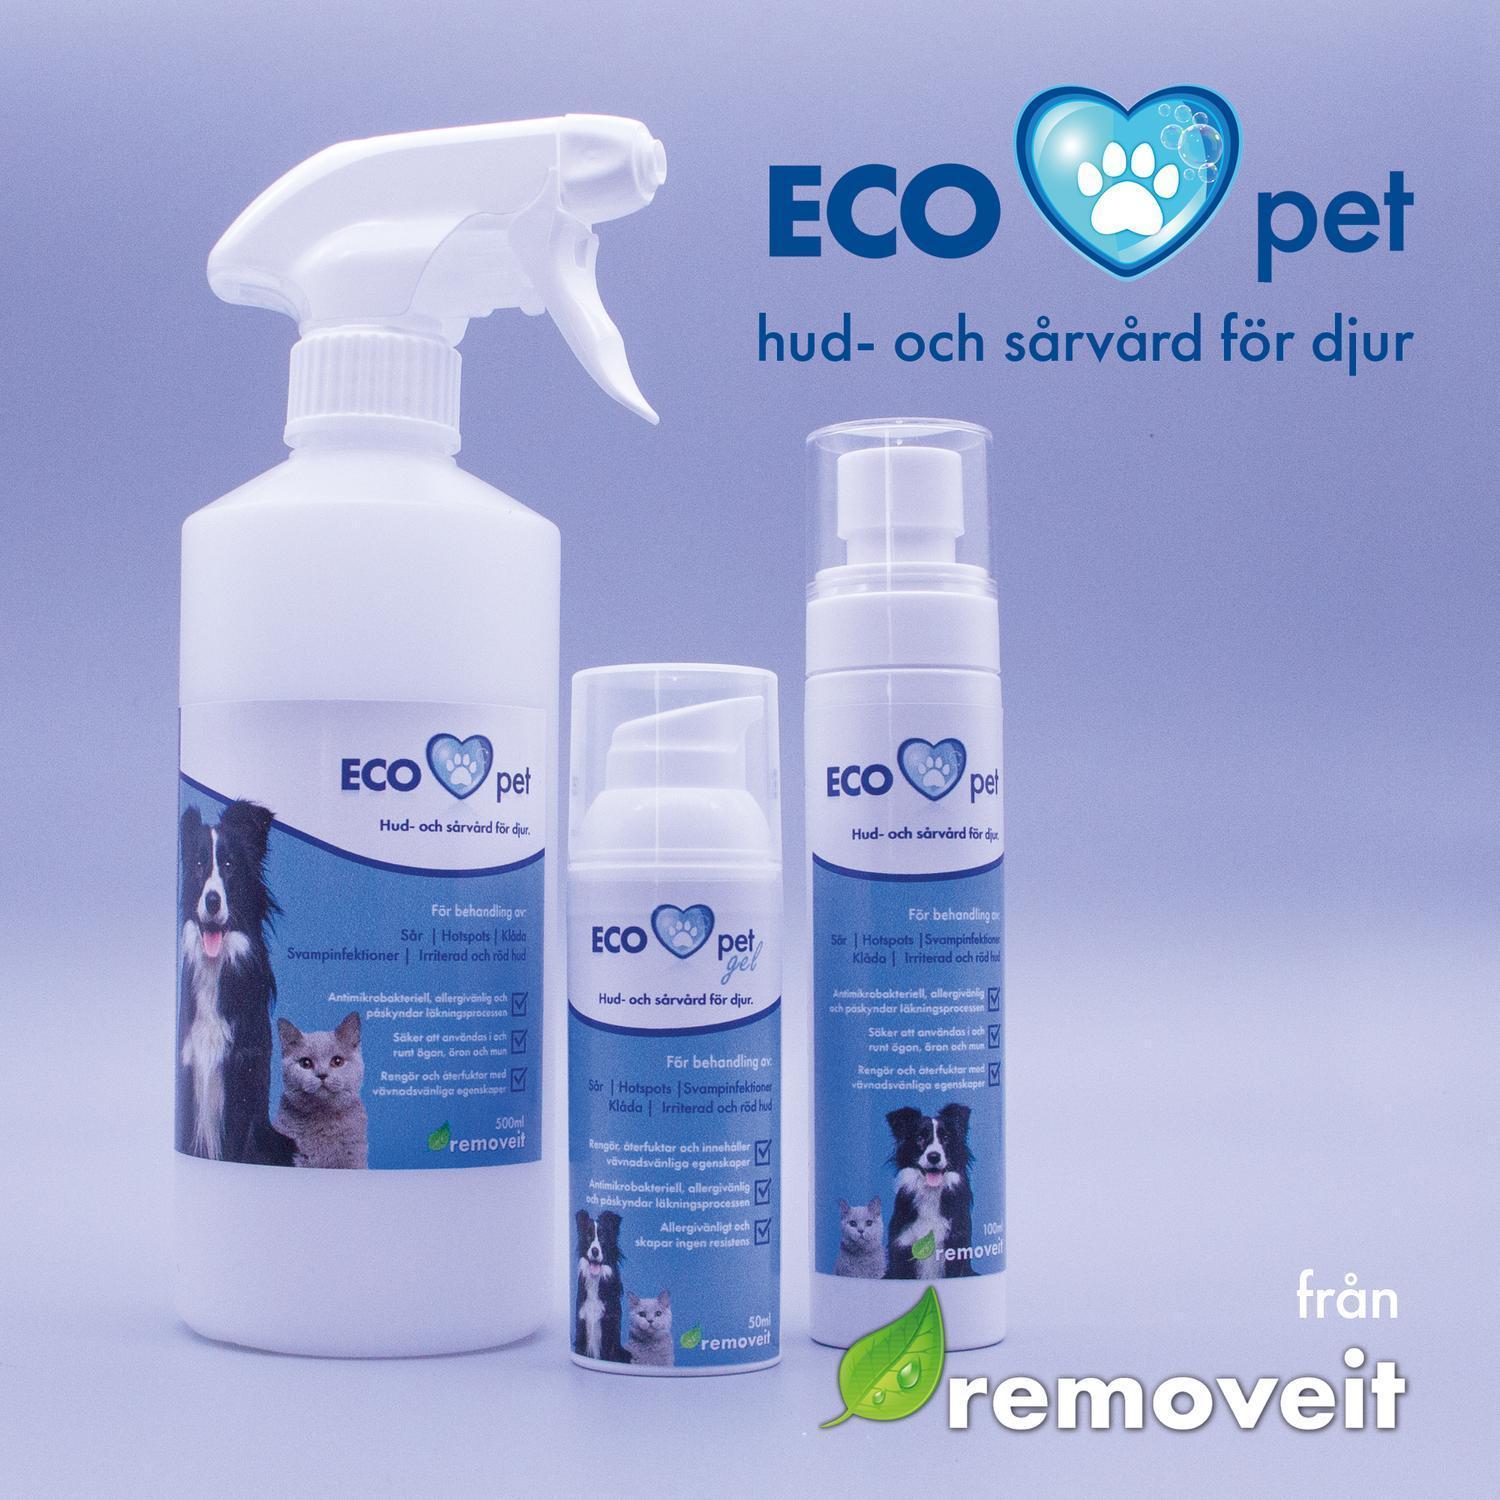 ECO pet hud- och sårvård - 100ml